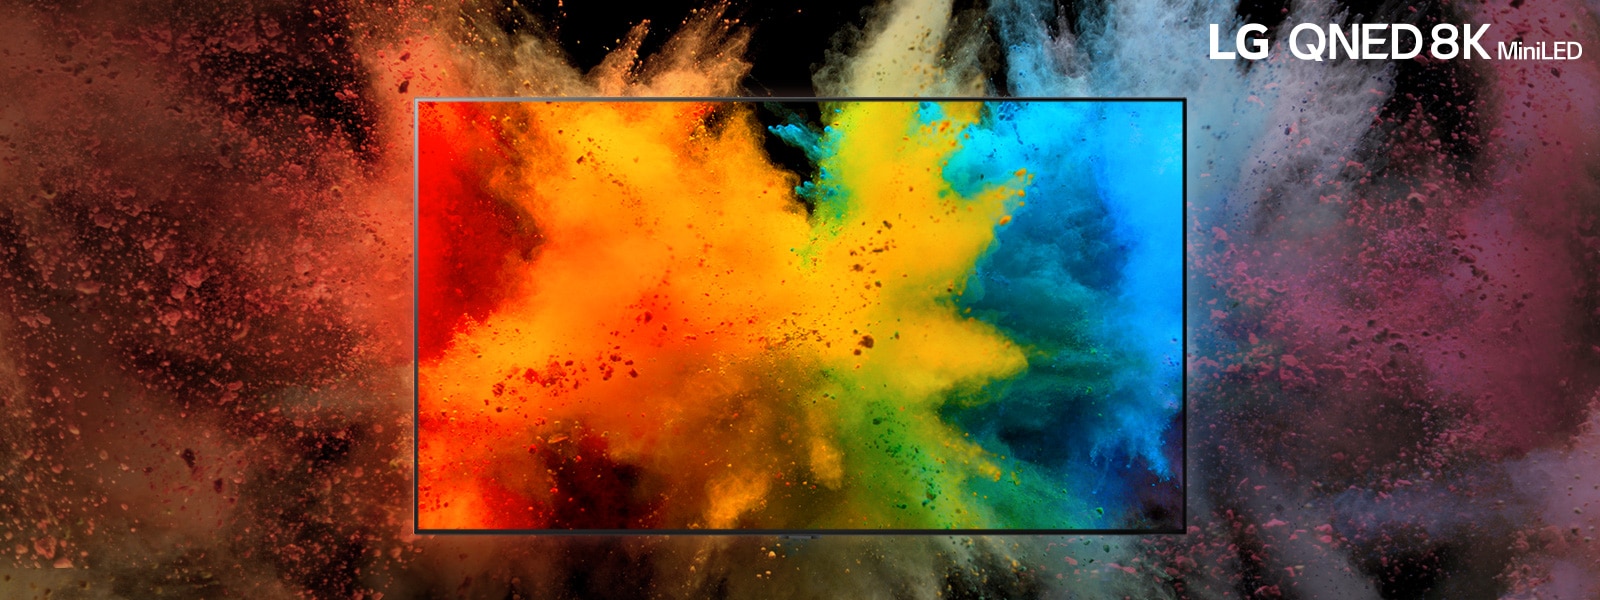 LG QNED у темній кімнаті.  Кольорові порошки створюють вибух райдужних кольорів на екрані телевізора.